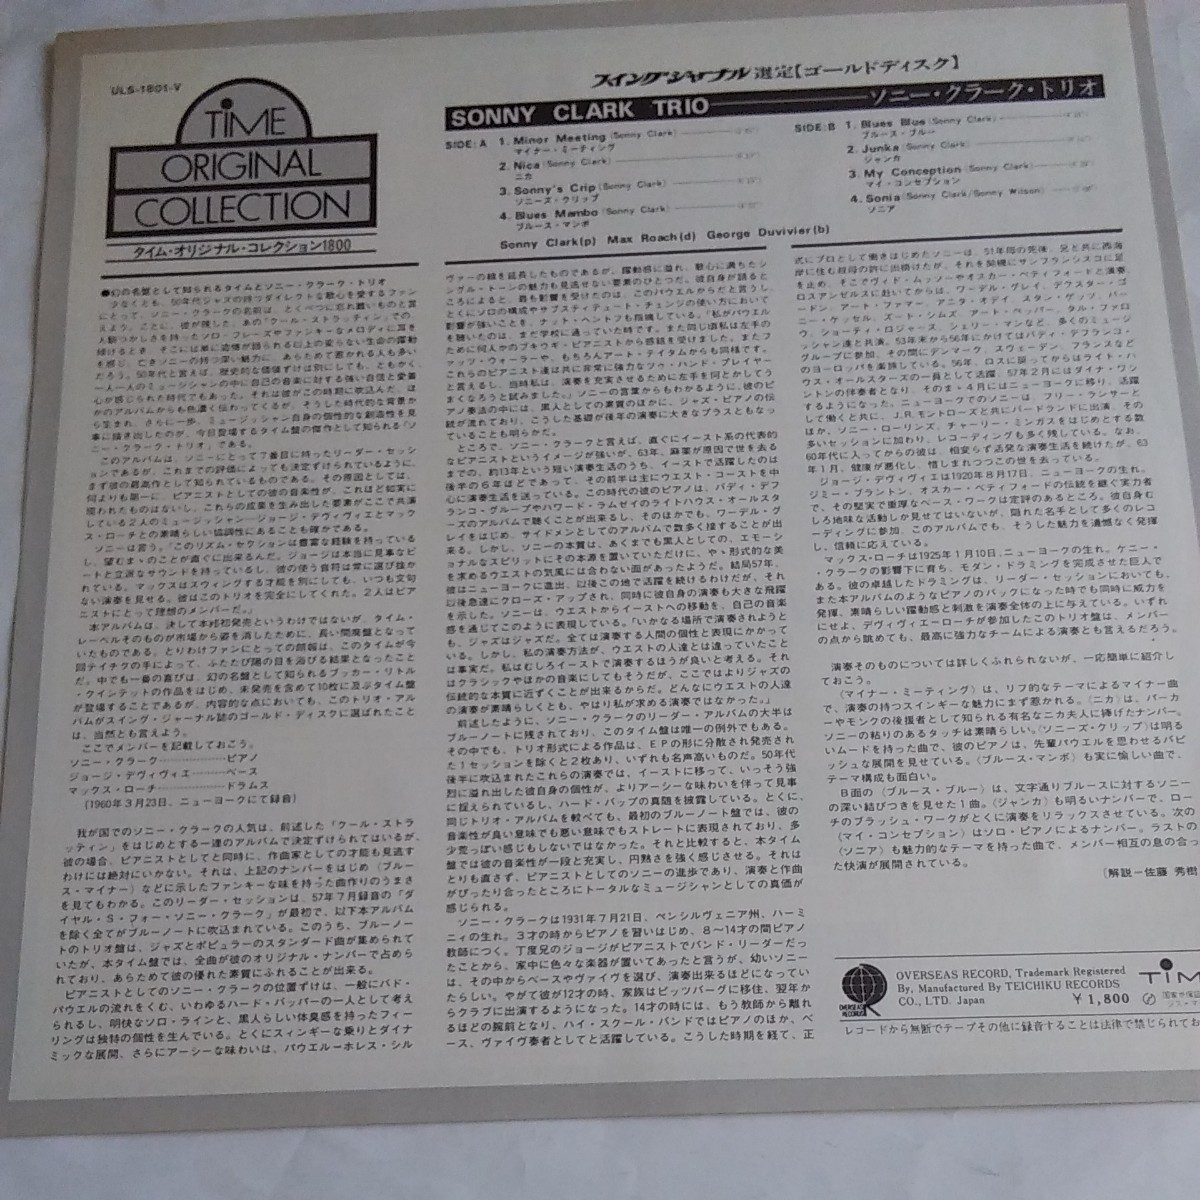 ソニー・クラーク・トリオタイム・オリジナル・コレクション ULS-1801 V/STEREO ¥1,800 TIME オーヴァーシーズレコード_画像3